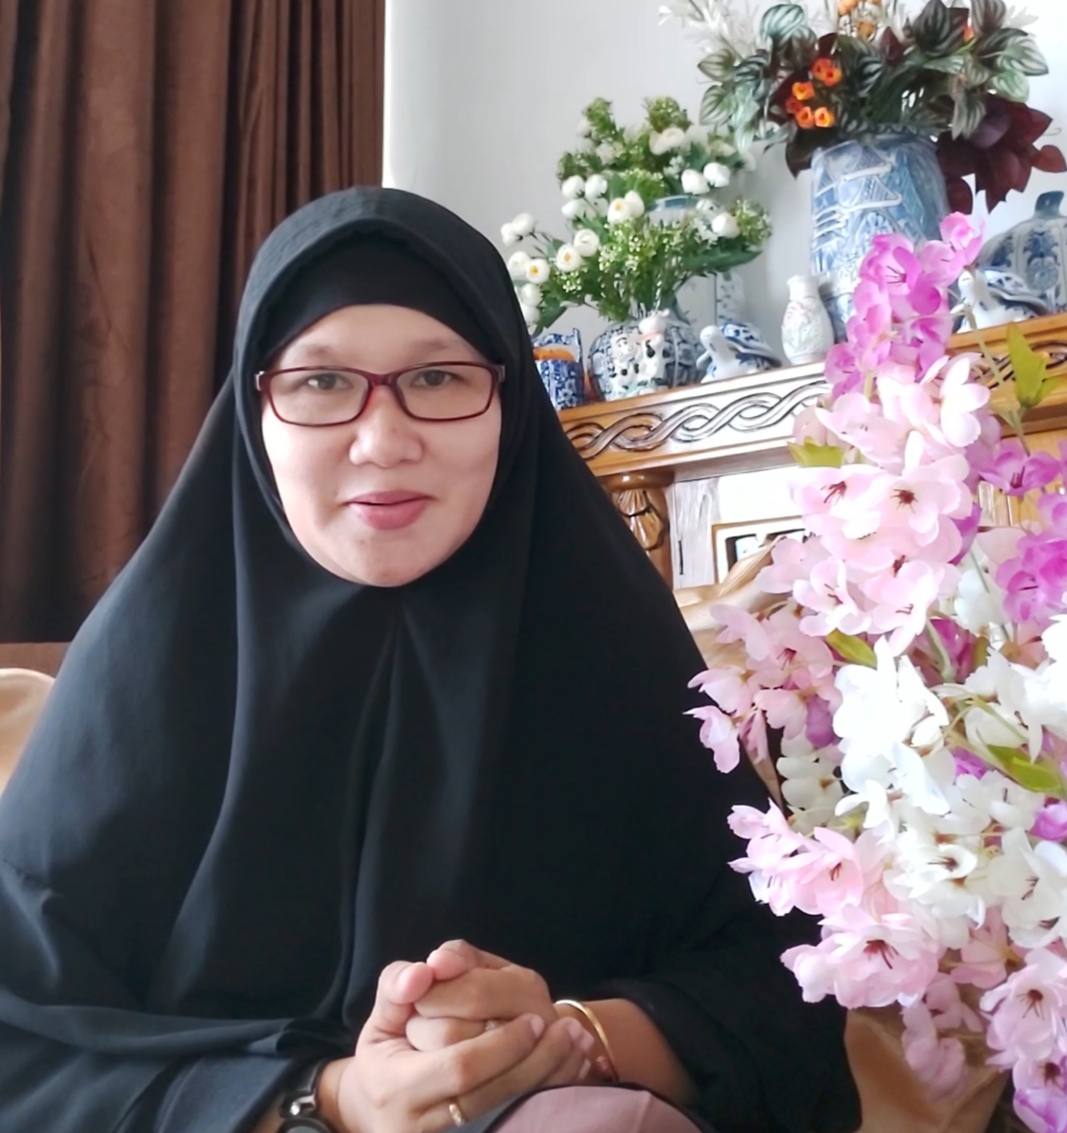 Peran Bimbingan Konseling Islam dalam Mengatasi Berbagai Permasalahan Keluarga di Masa Pandemi